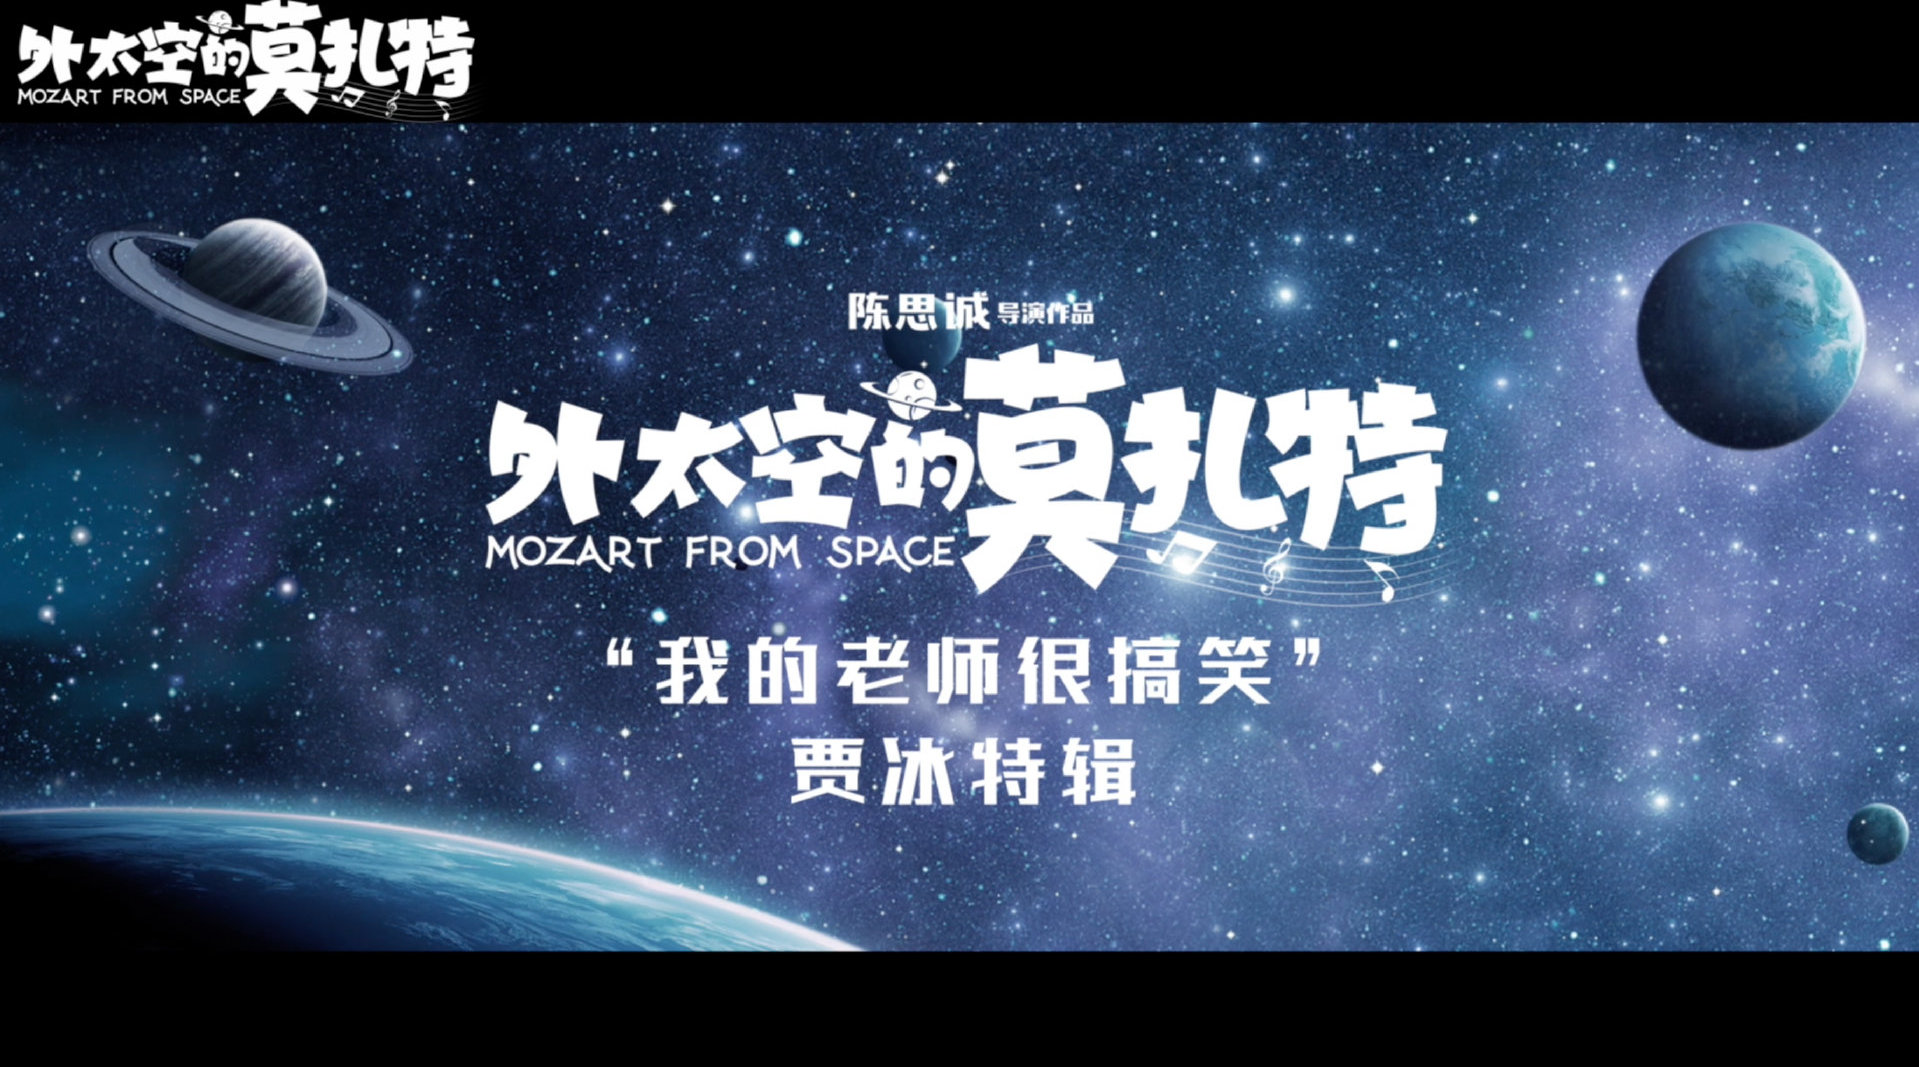 奇幻合家欢电影《外太空的莫扎特》发布贾冰特辑